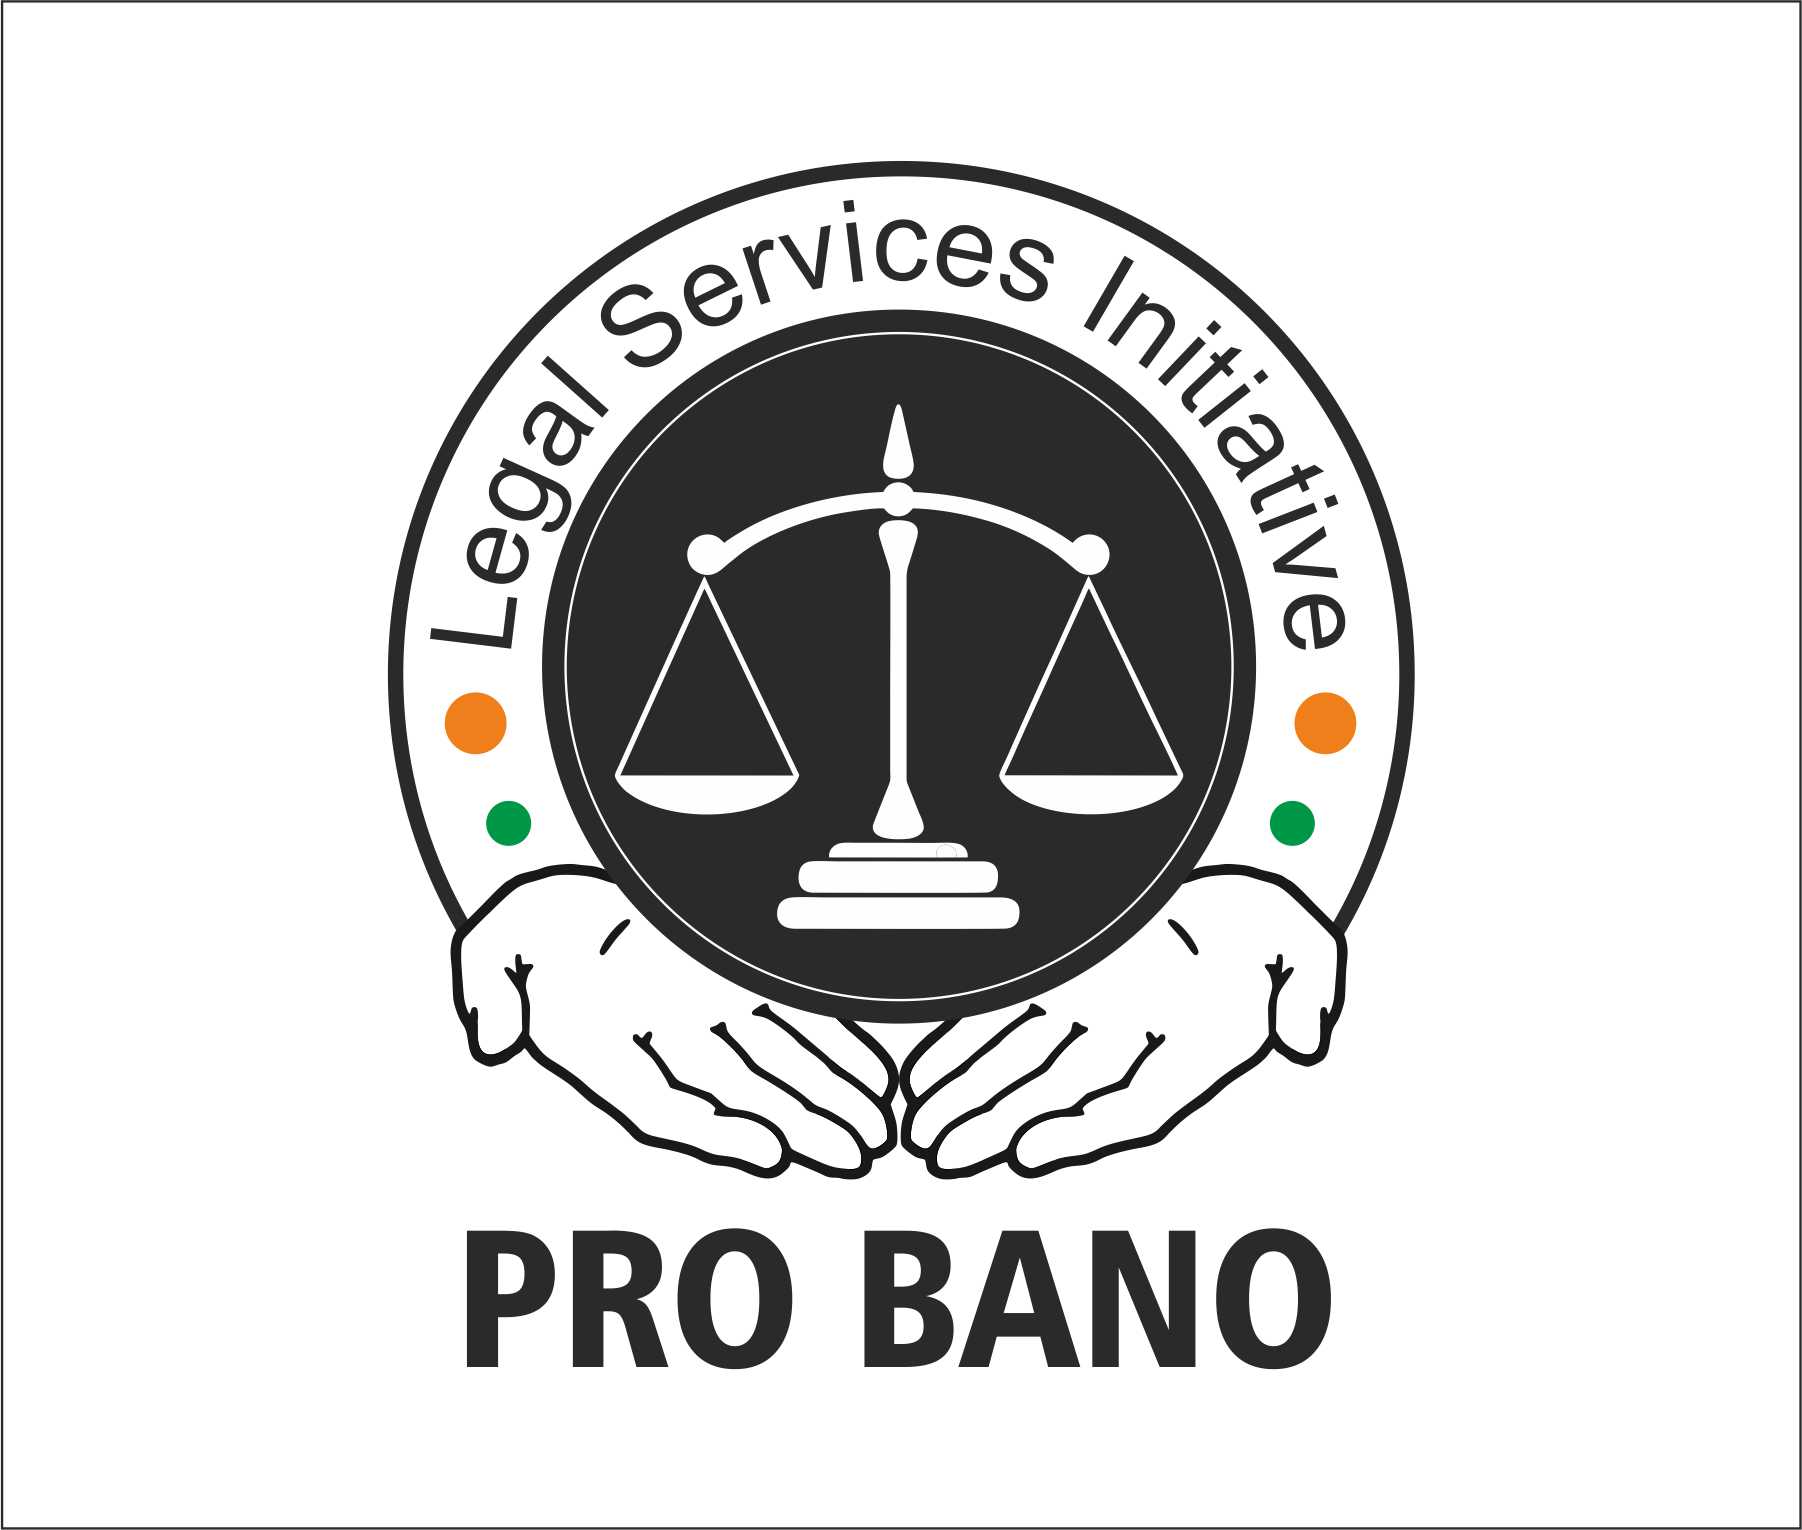 Legal Service Logo - Logo Design Contest for Pro Bono Legal Services initiative